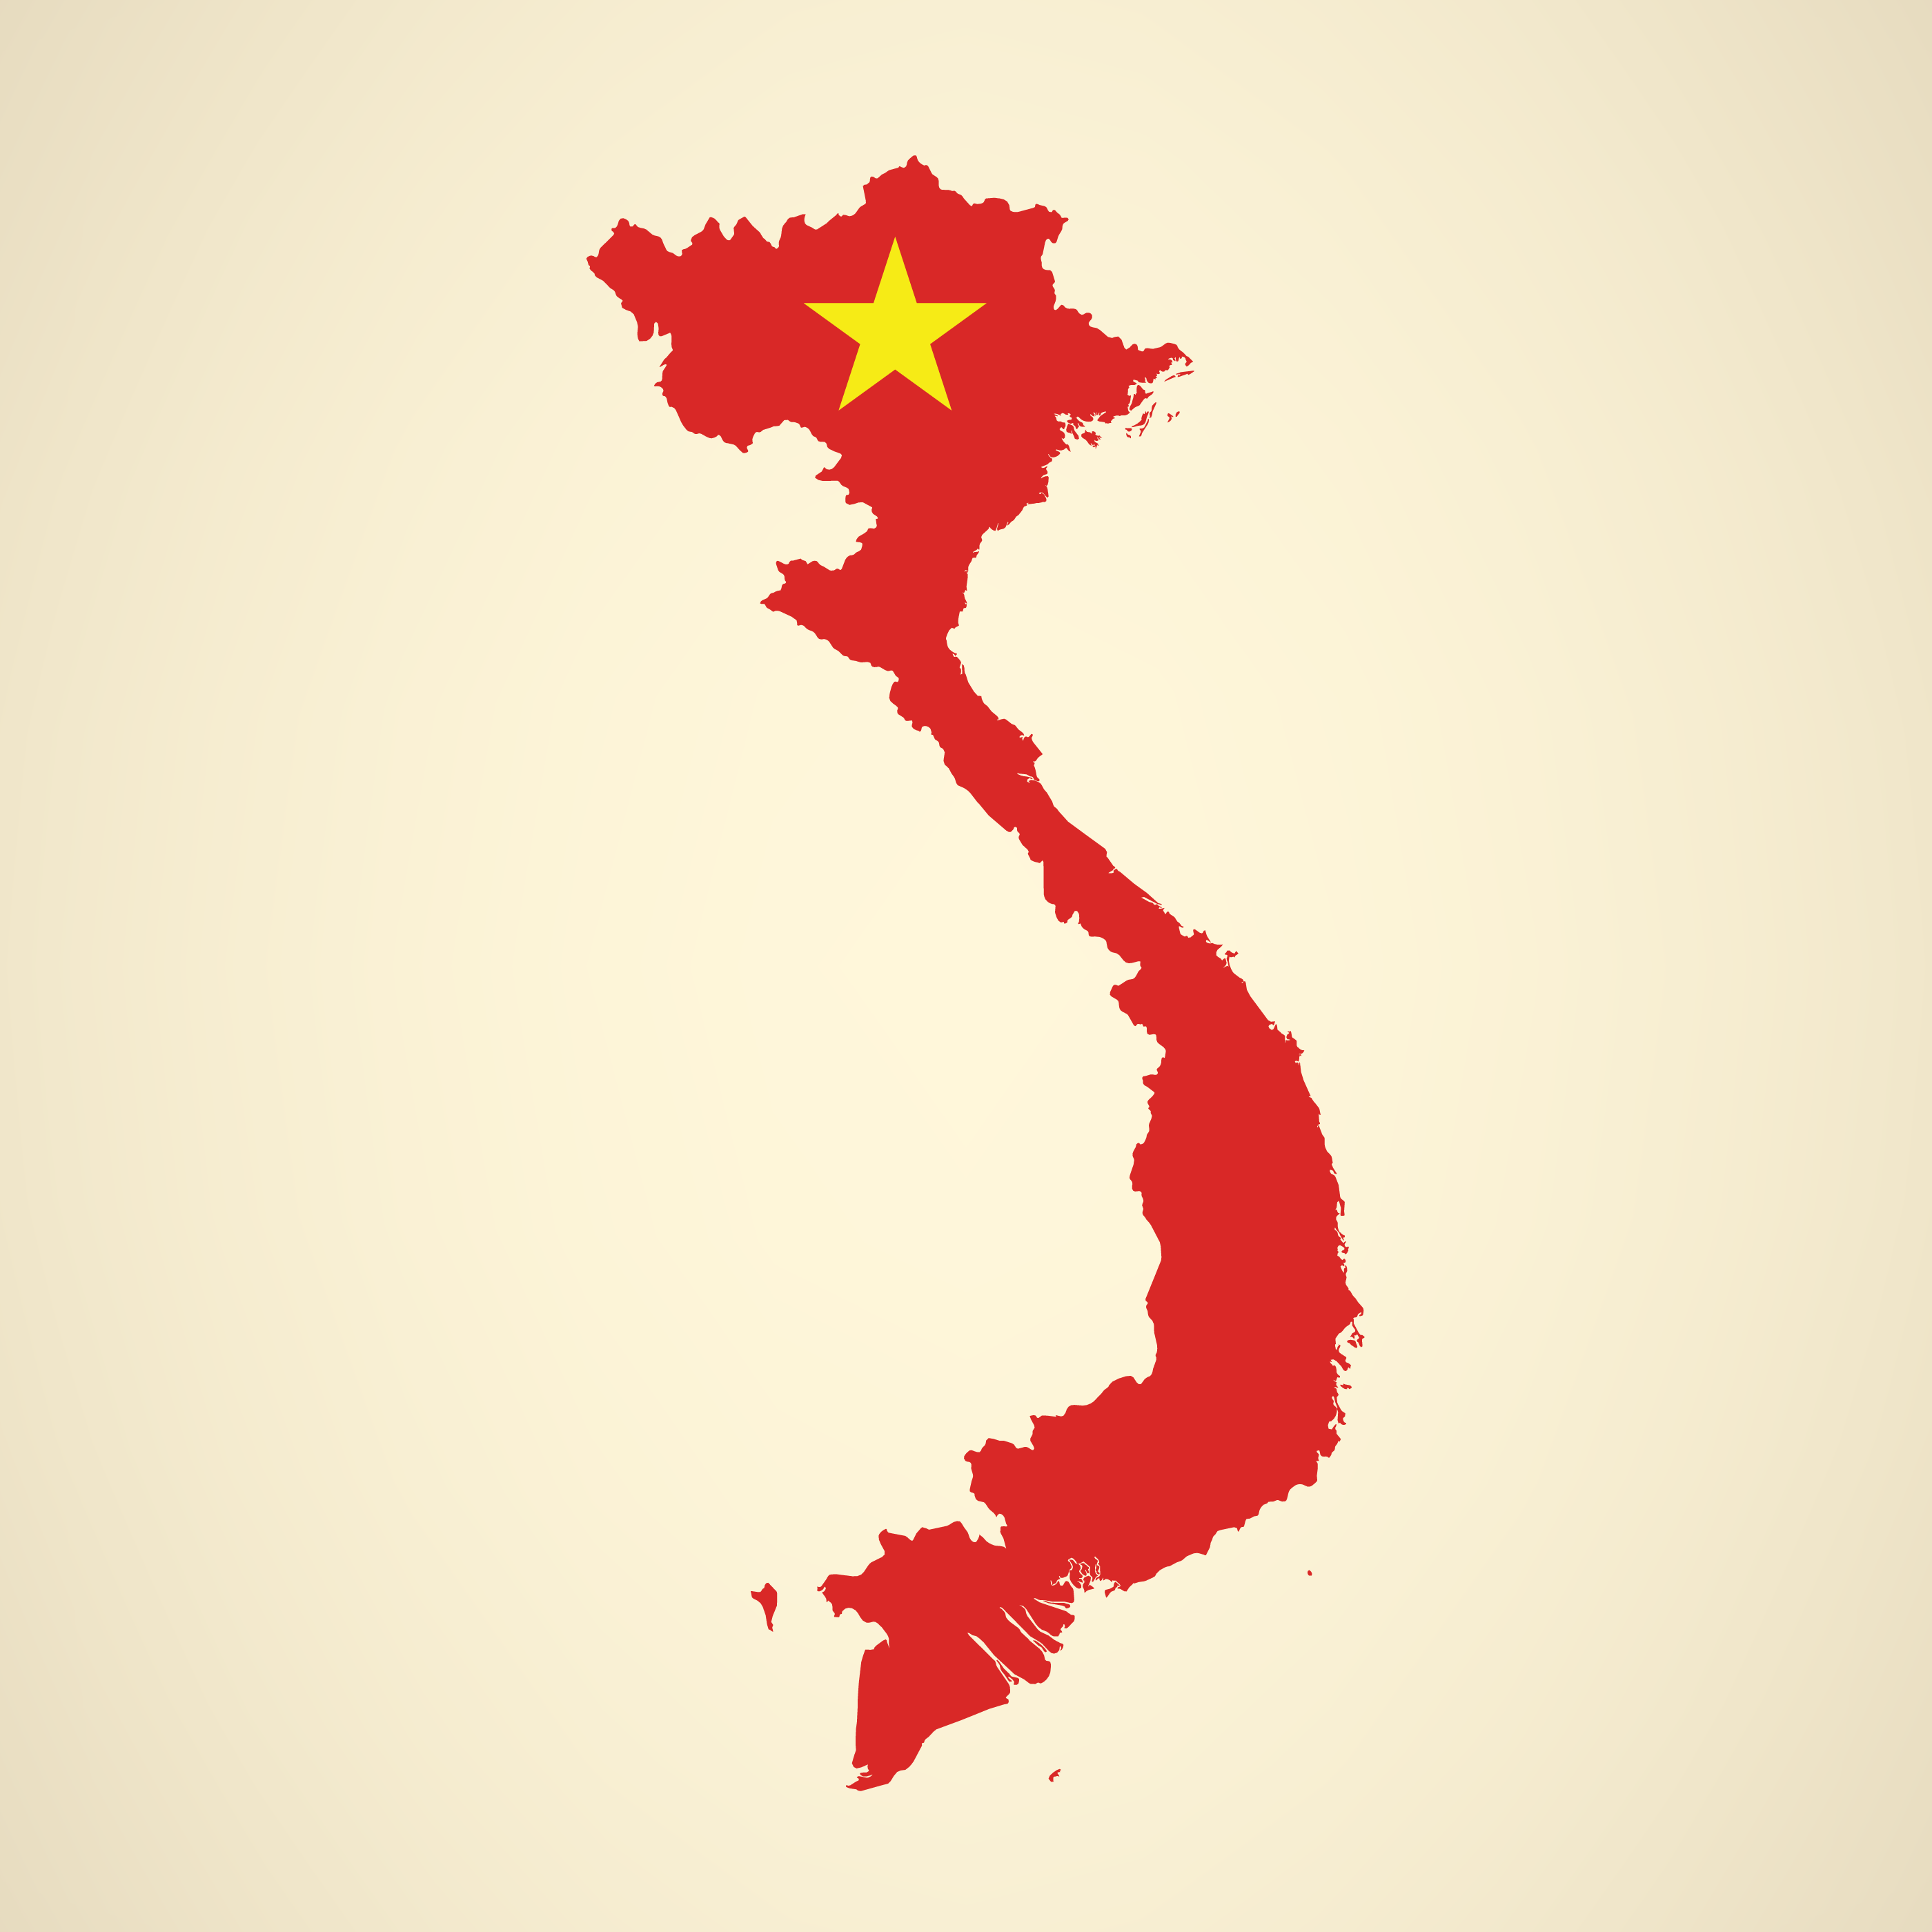 Thiết kế đơn giản nhưng đầy tính chất quốc gia với hình ảnh Quốc kỳ Việt Nam được nhúng trong bản đồ vector. Tệp tin này cũng được cập nhật đến năm 2024 và sẽ làm cho dự án của bạn trở nên xuất sắc và sáng tạo hơn bao giờ hết.